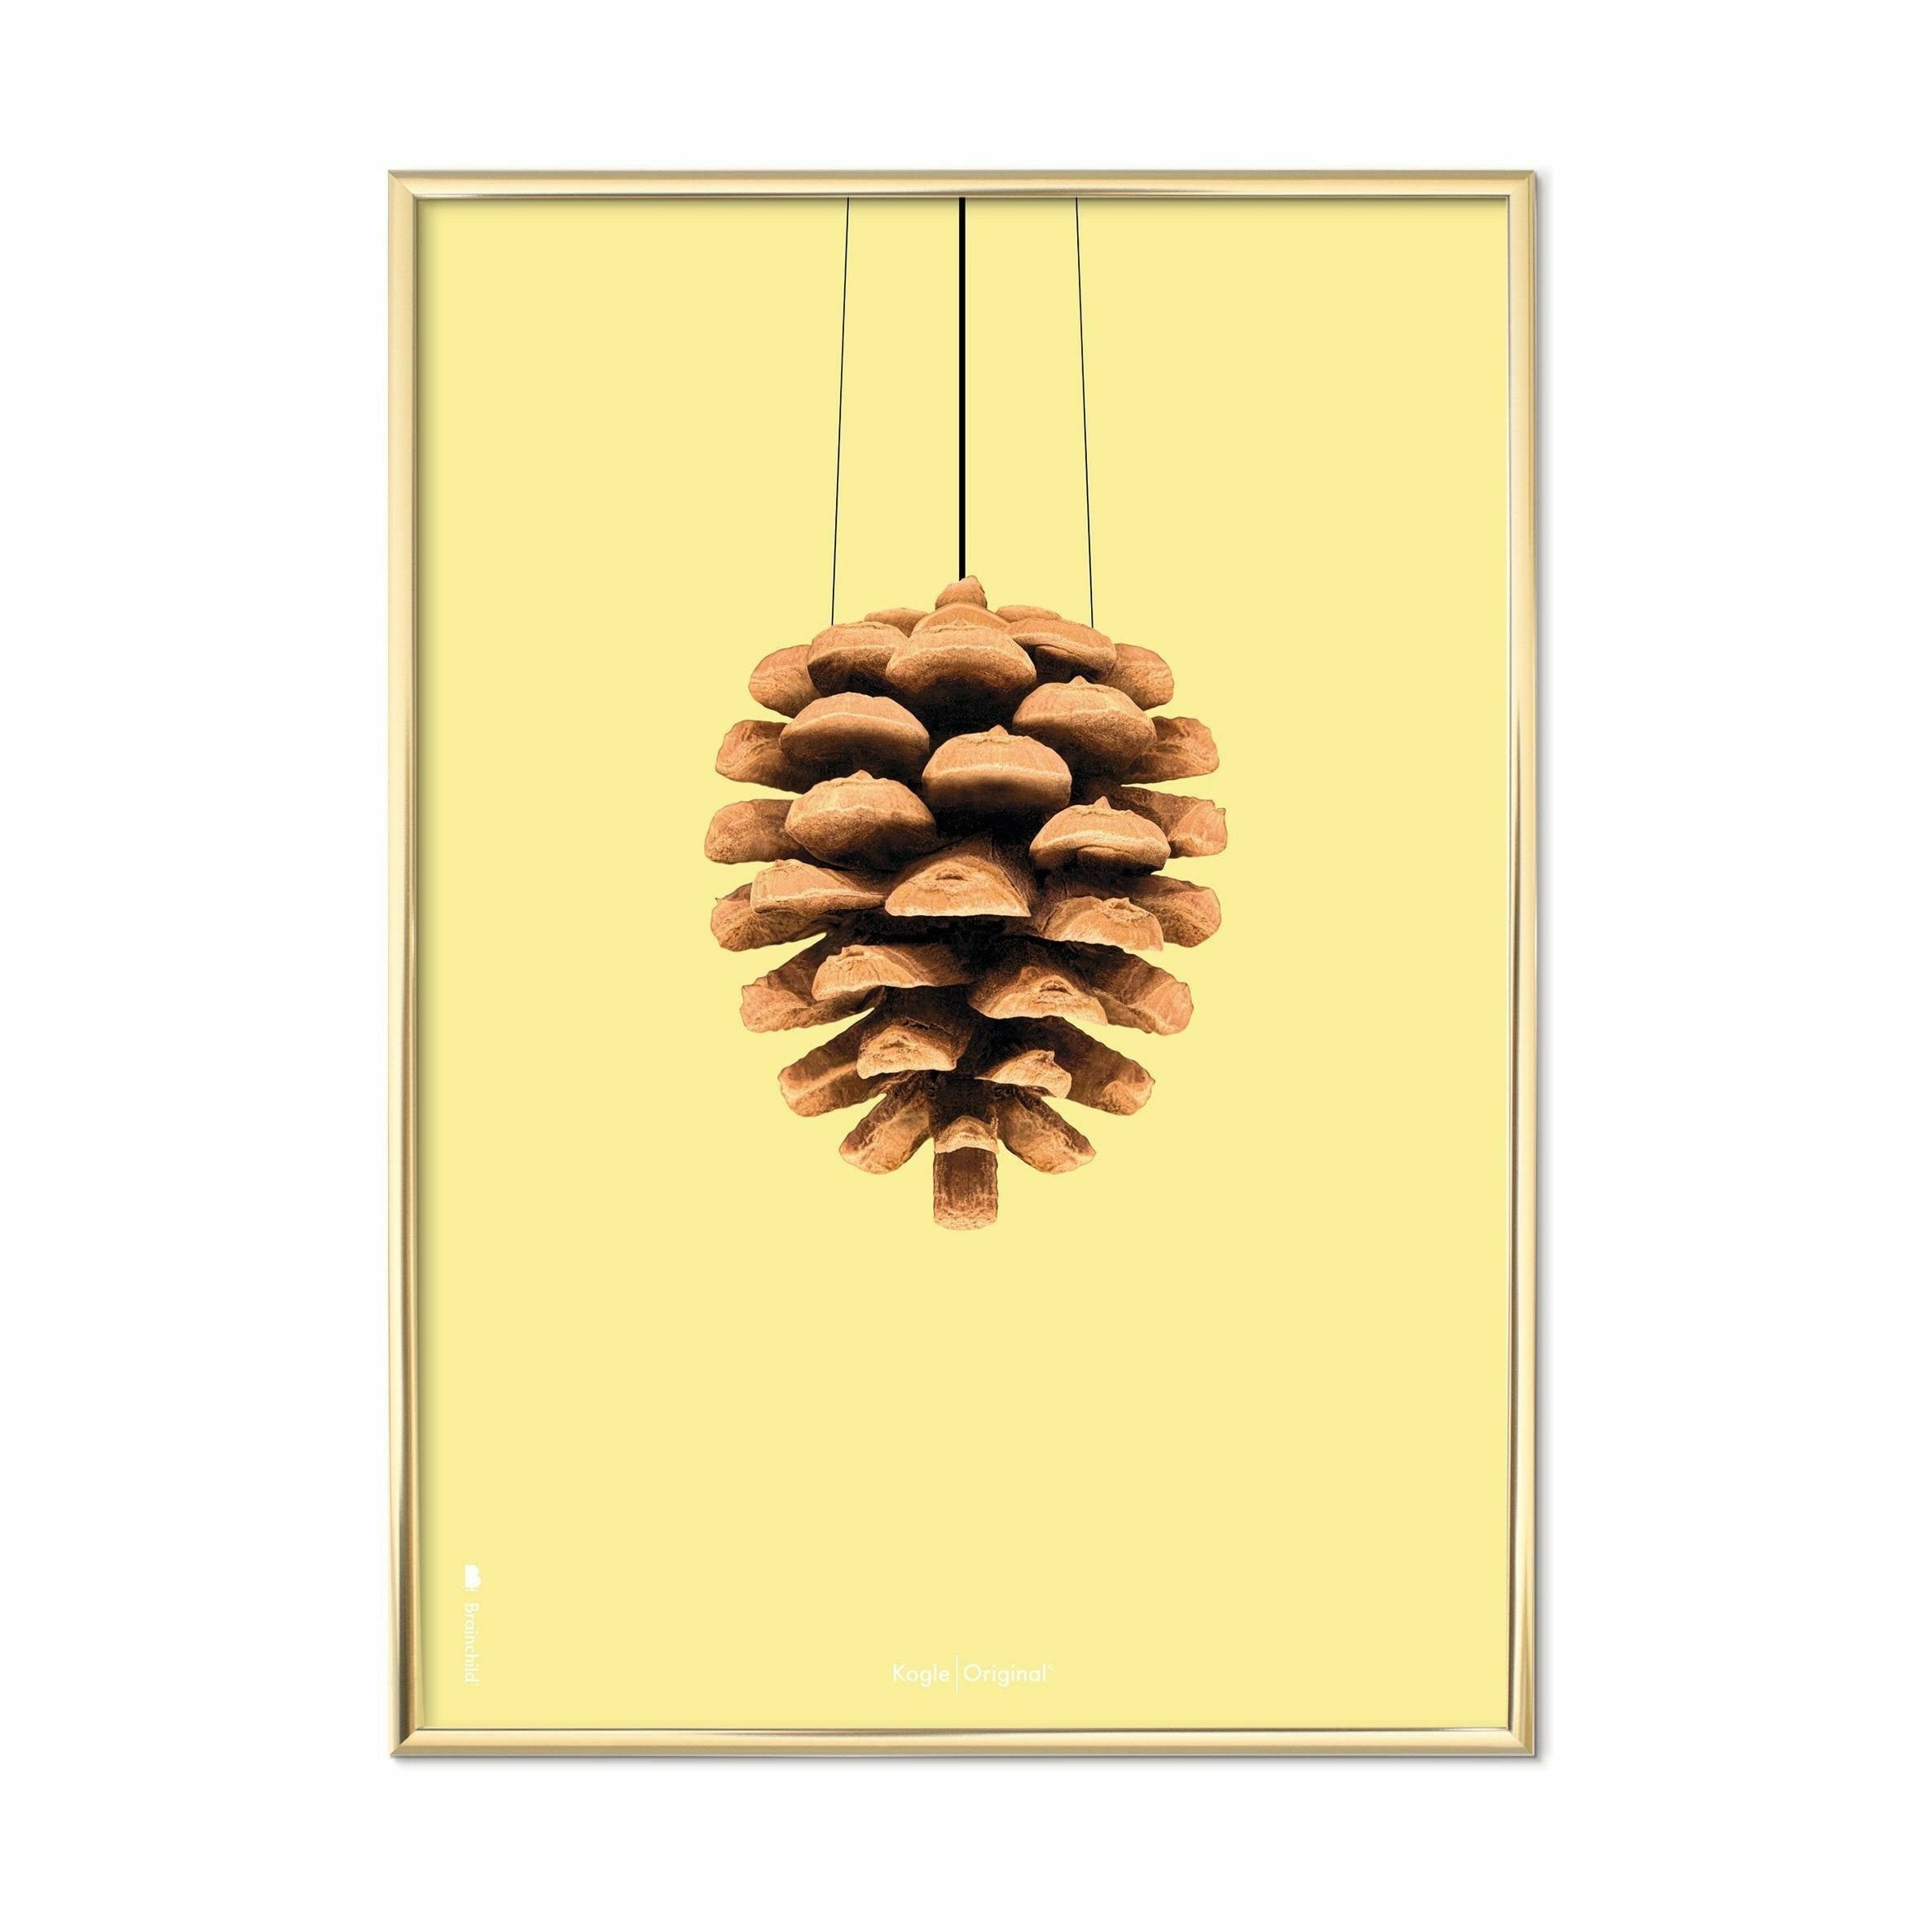 Hugarfóstur Pine keilu klassísk veggspjald, koparlitað rammi 70 x100 cm, gulur bakgrunnur